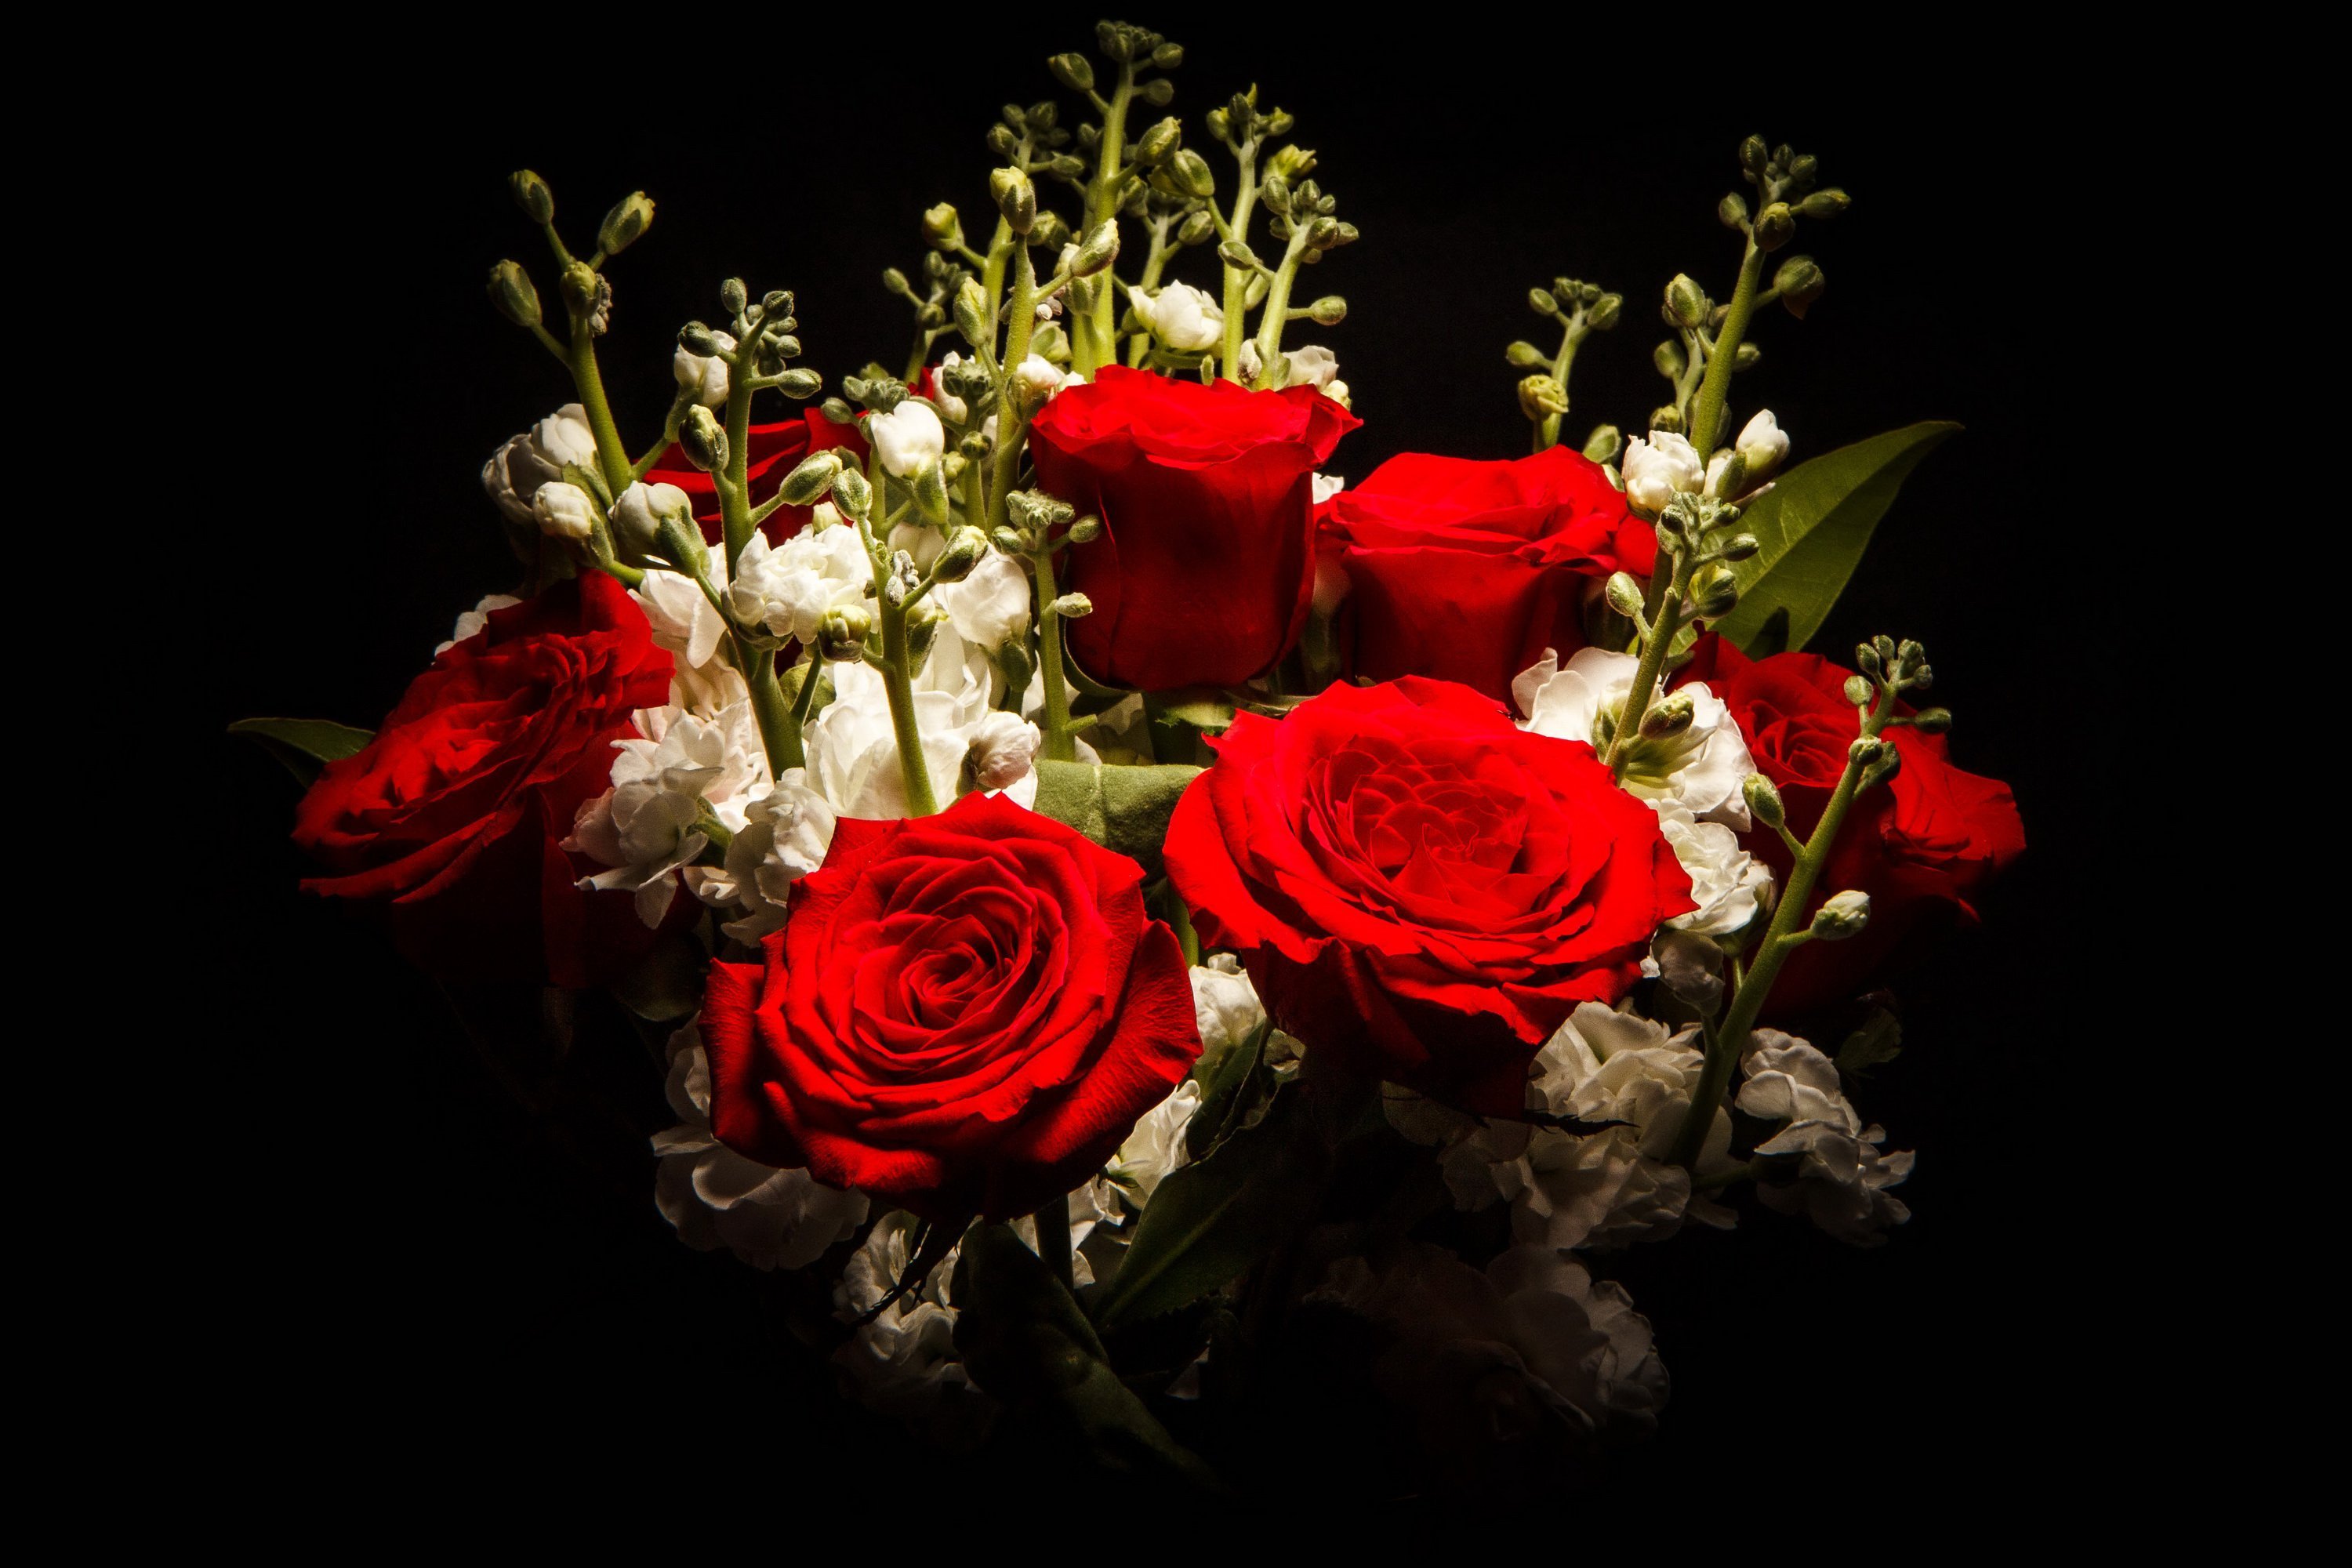 Футаж букет цветов. Красивые цветы на черном фоне. Красивые красные розы. Шикарный букет цветов. Красивый букет цветов на темном фоне.